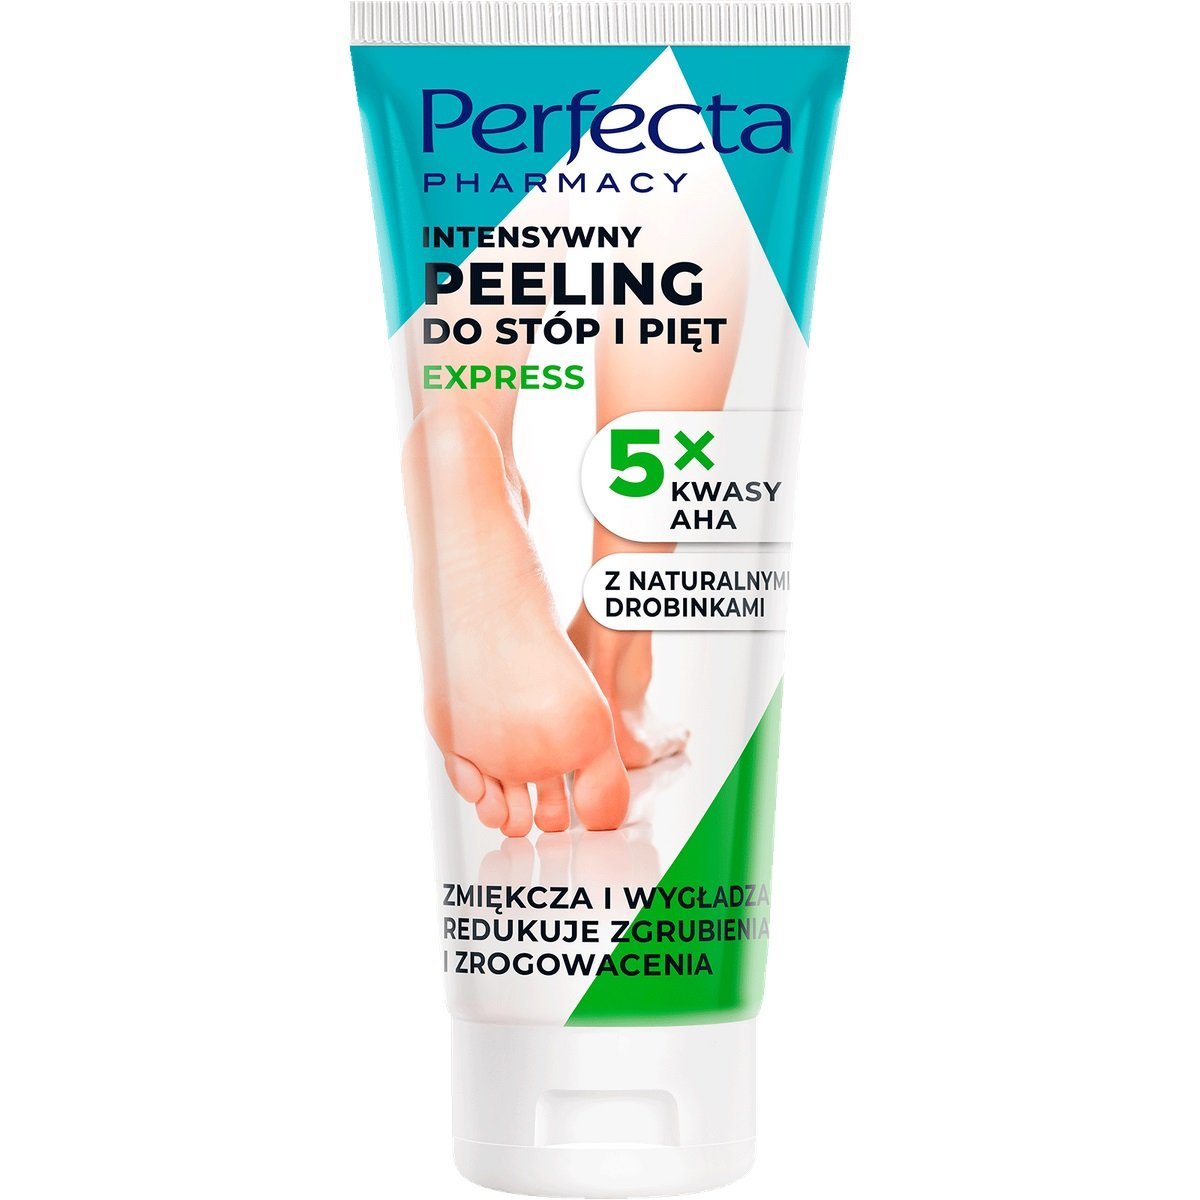 Фото - Засіб для очищення обличчя і тіла Perfecta Pharmacy, Intensywny Peeling Do Stóp I Pięt, 80ml 